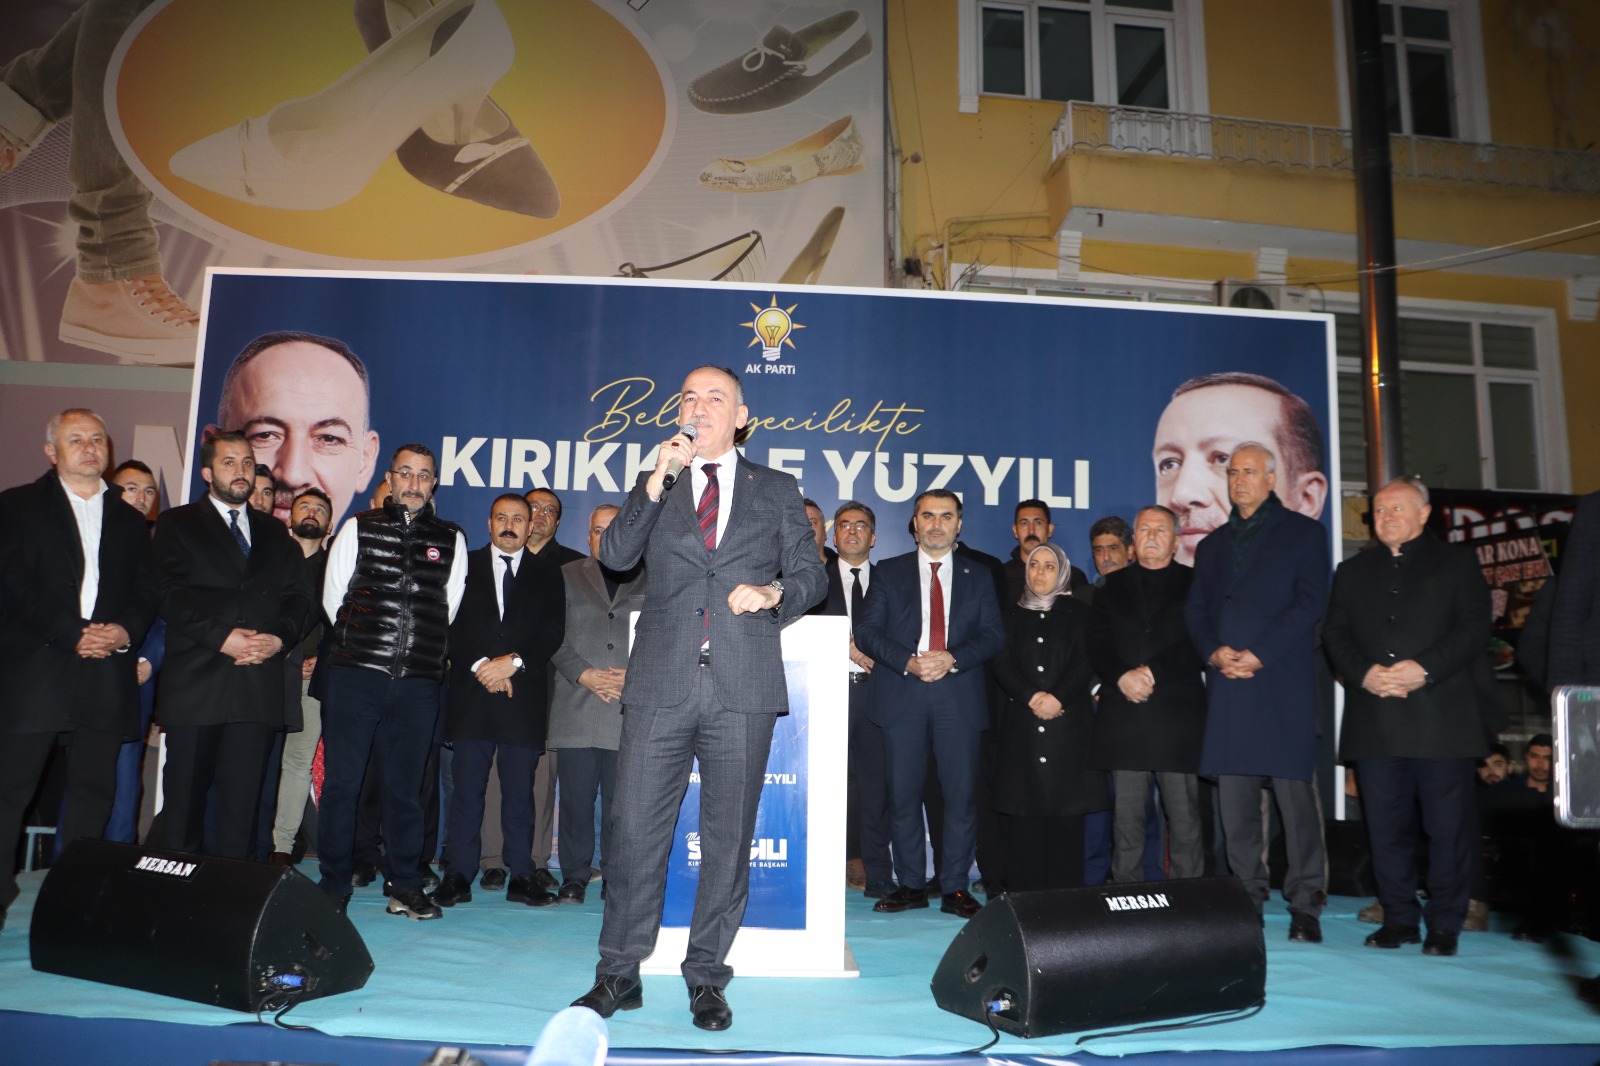 mehmet-saygili-ak-parti-kirikkale-belediye-baskan-adayi-karsilama-2 AK Parti Kırıkkale Belediye Başkanı Mehmet Saygılı'ya Coşkulu Karşılama